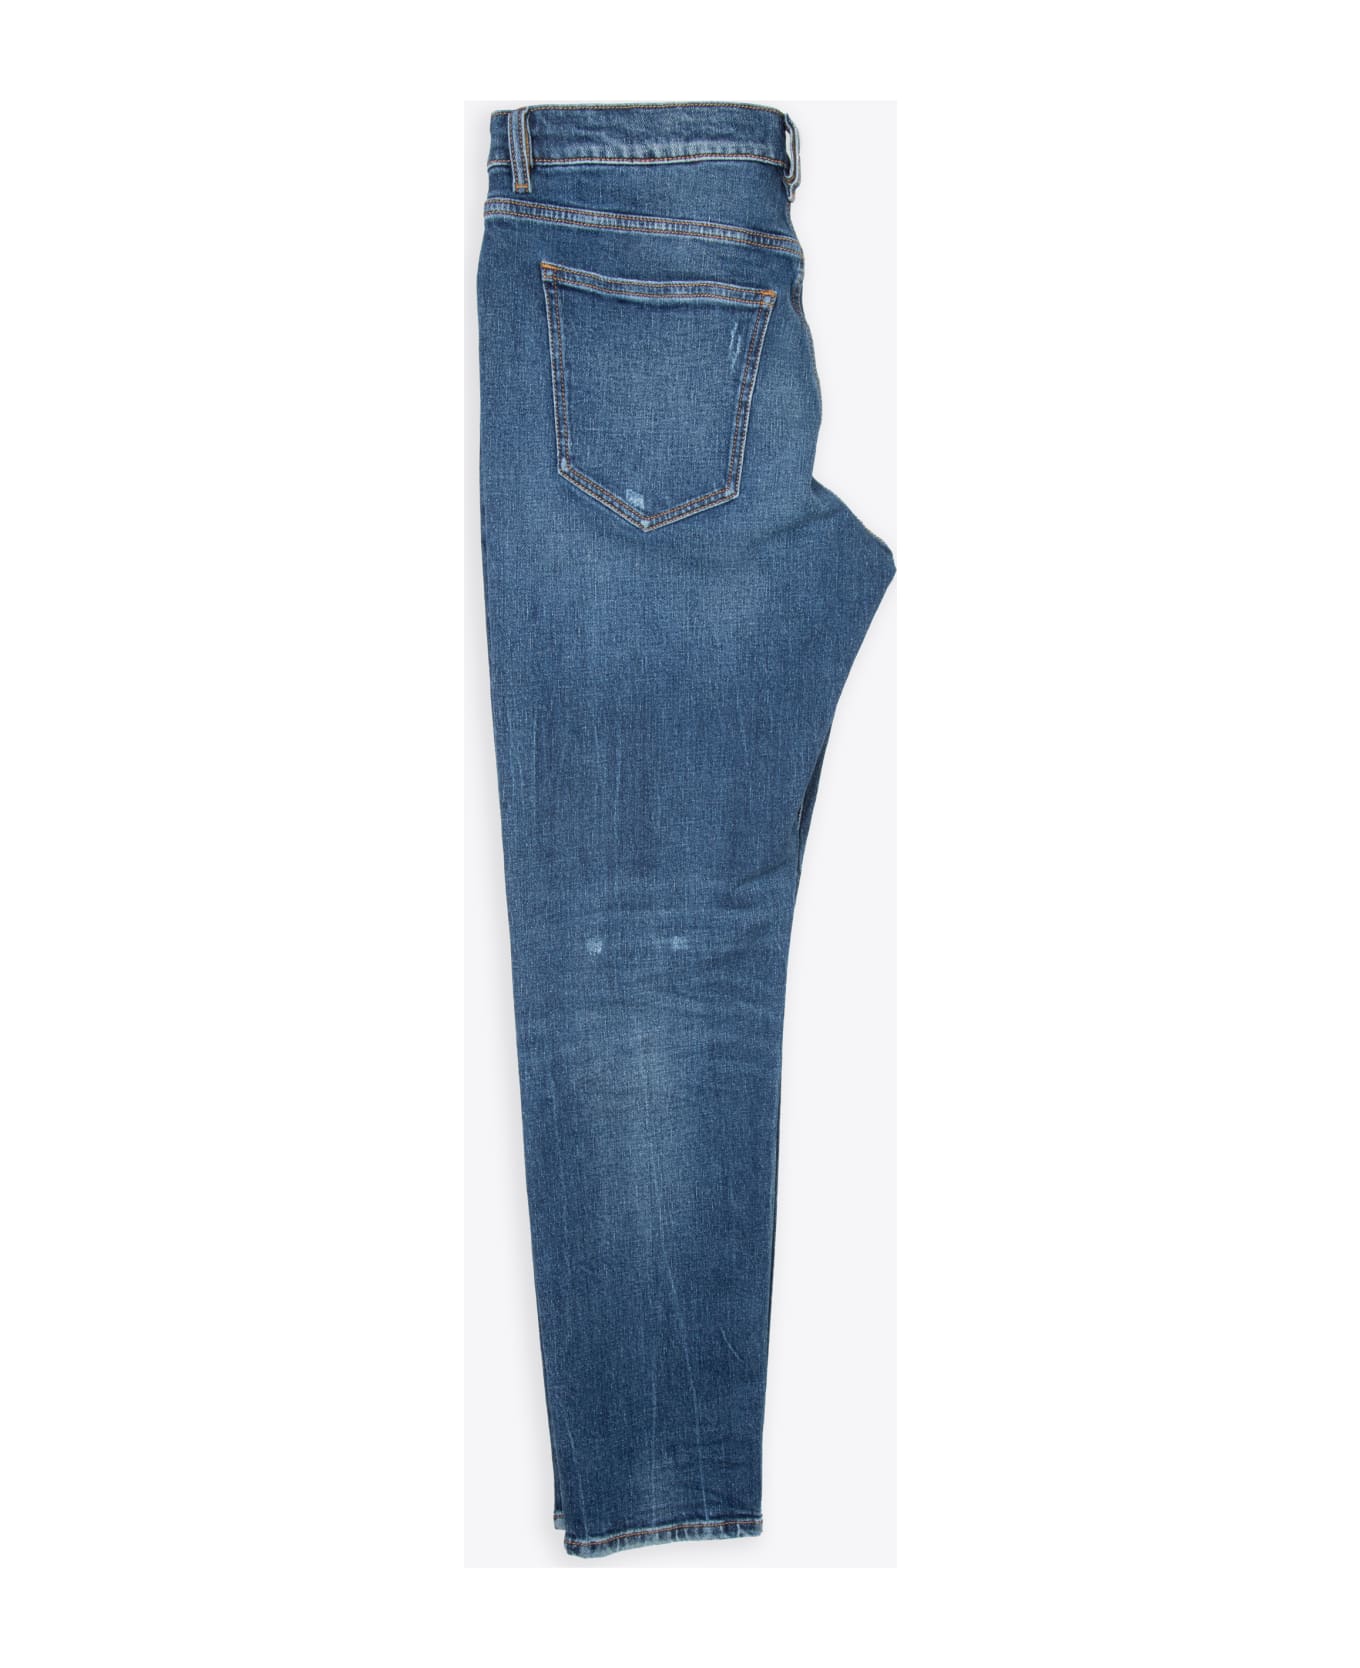 Diesel 2019 D-strukt L.30 Washed medium blue slim fit jeans - 2019 D-Strukt - Denim blu